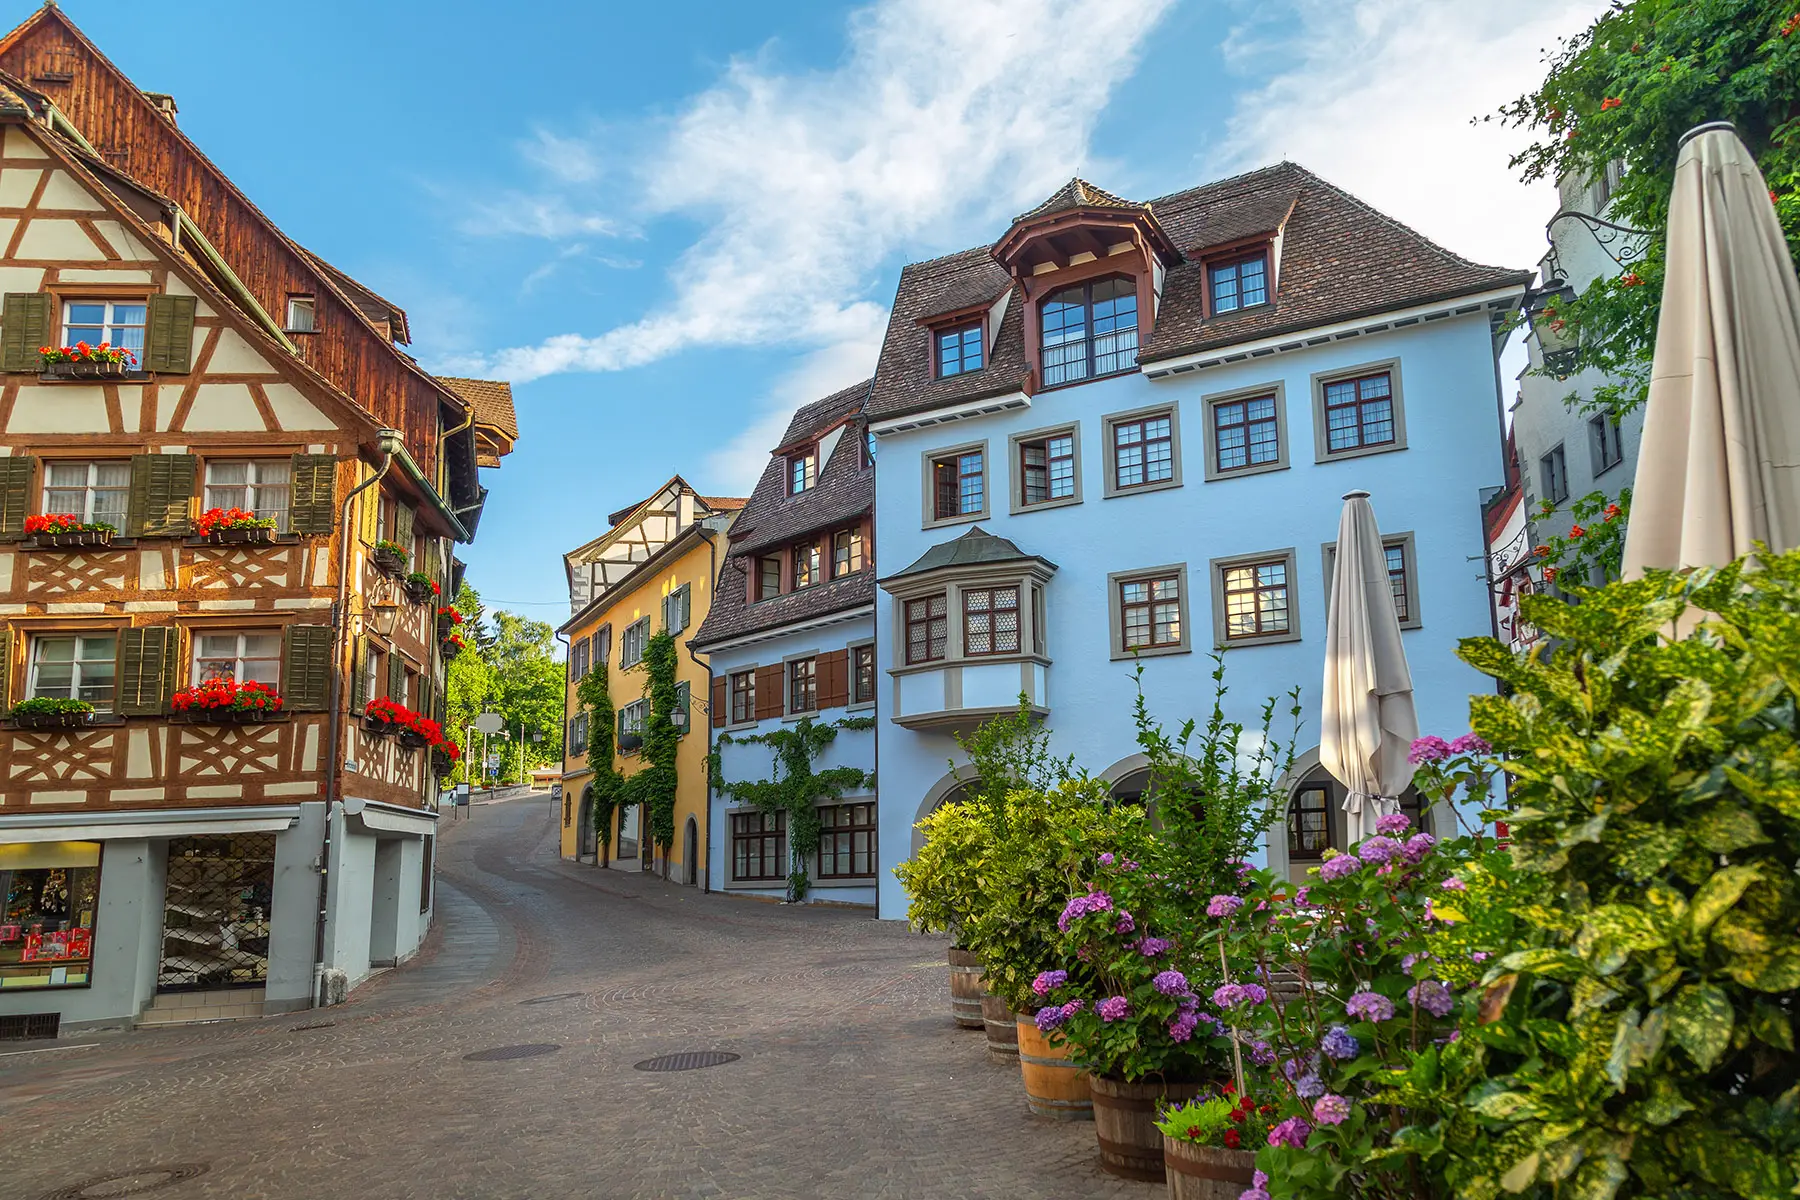 Historic houses in Meersburg, Germany